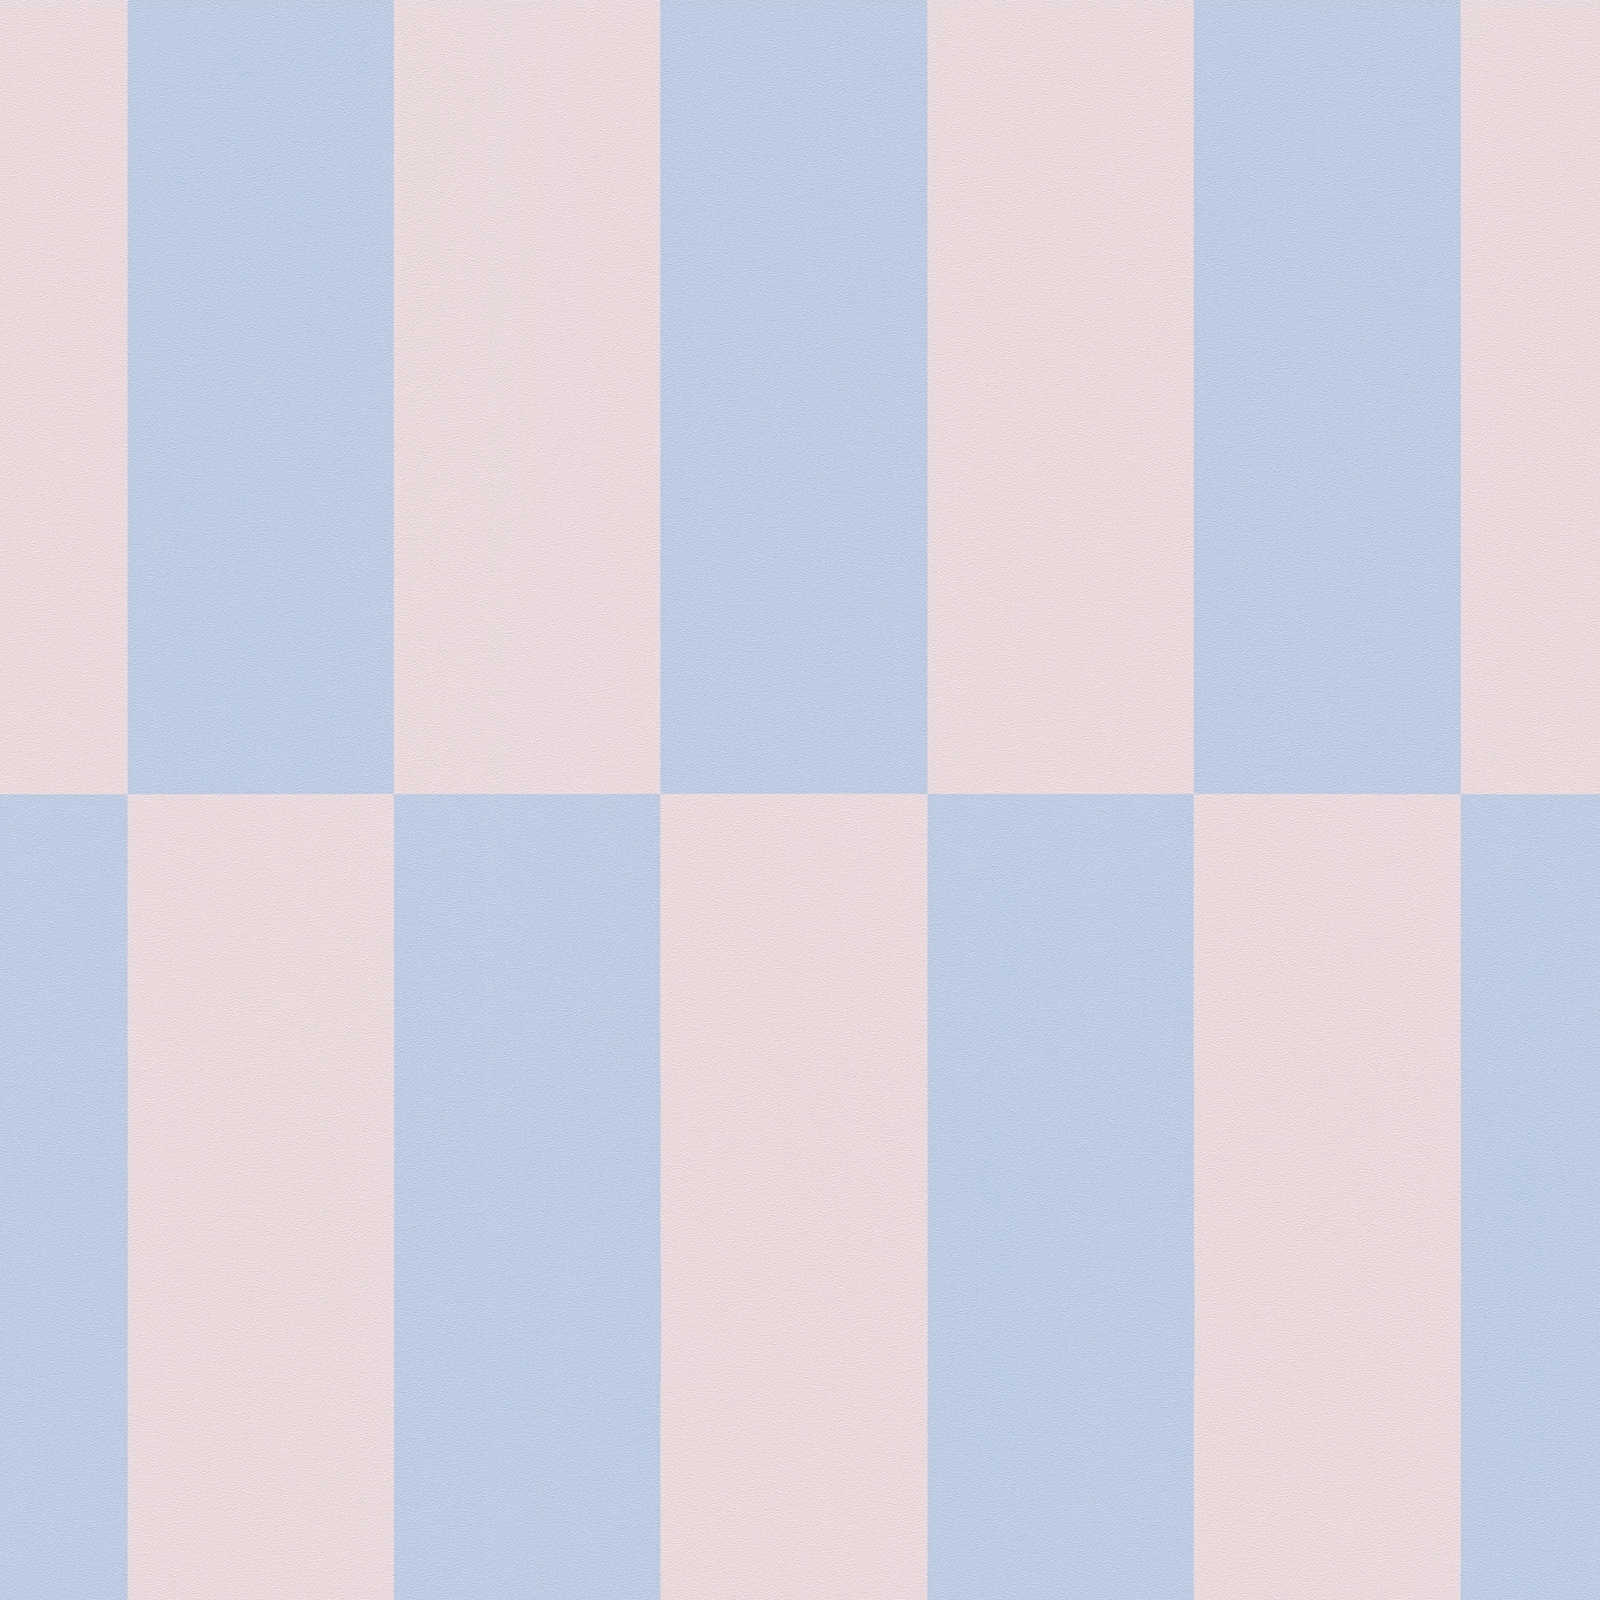             Vliestapete Grafik Vierecke zweifarbig – Blau, Rosa
        